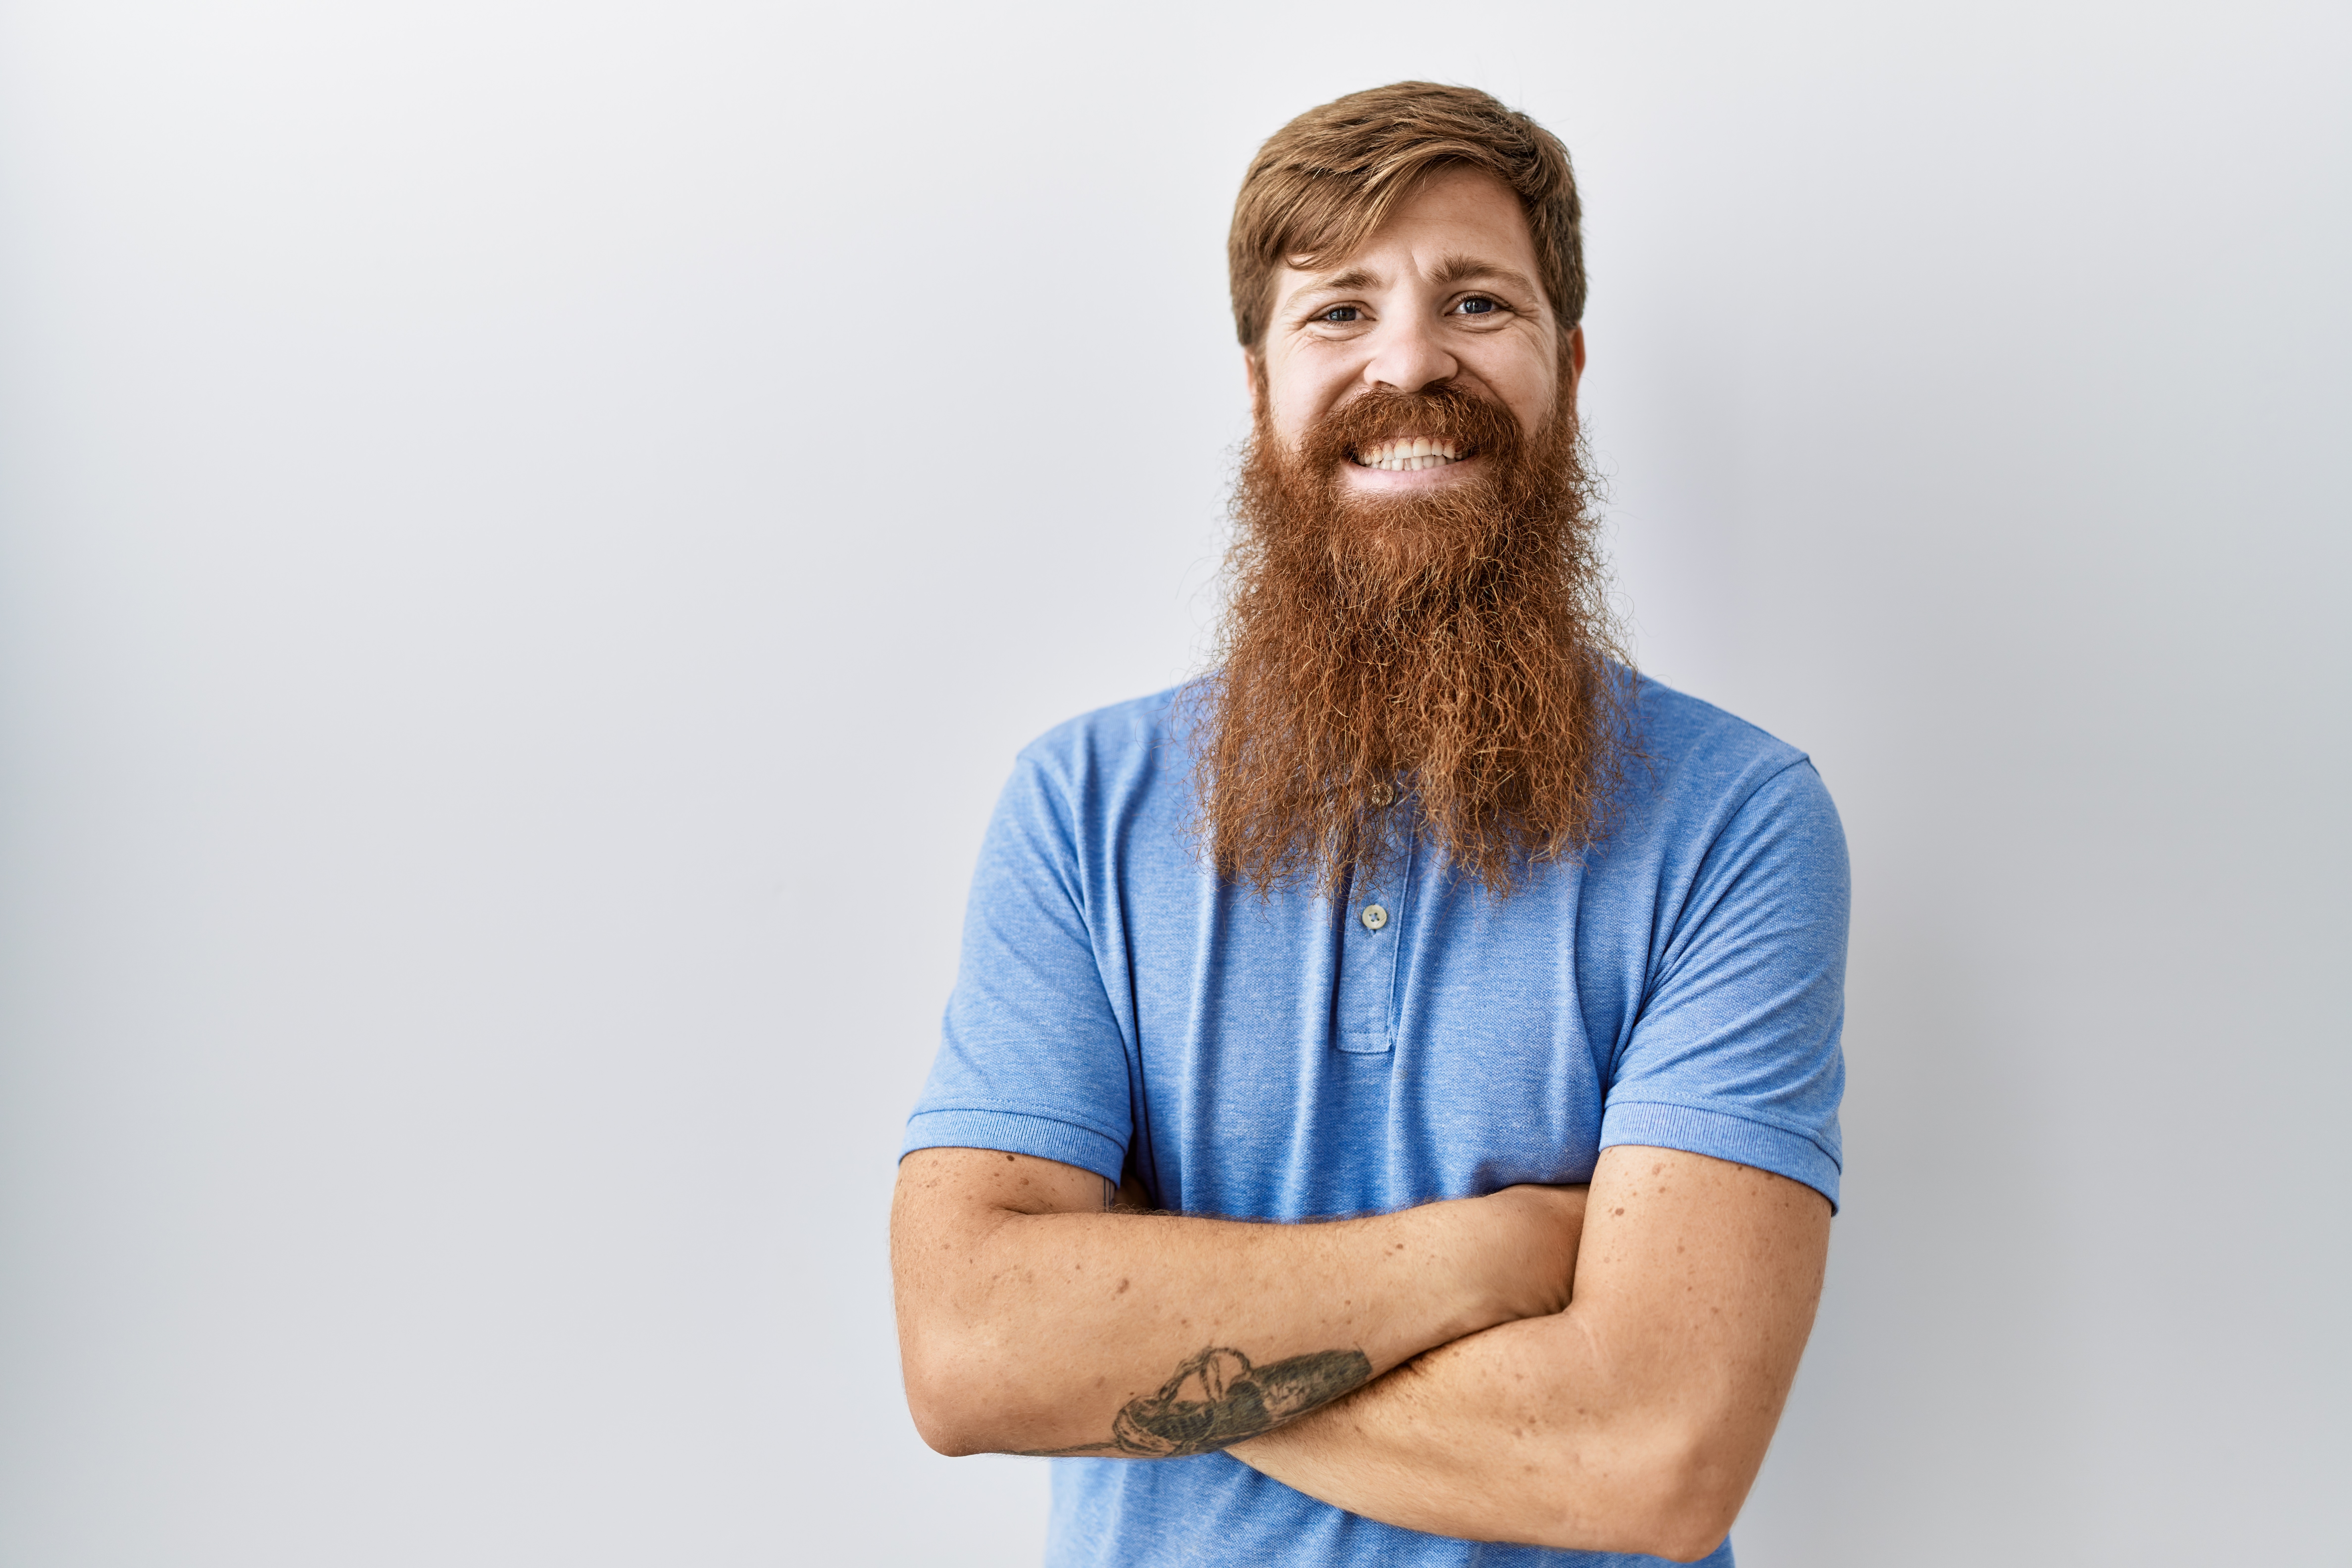 Un hombre con barba larga sonriendo. | Foto: Shutterstock